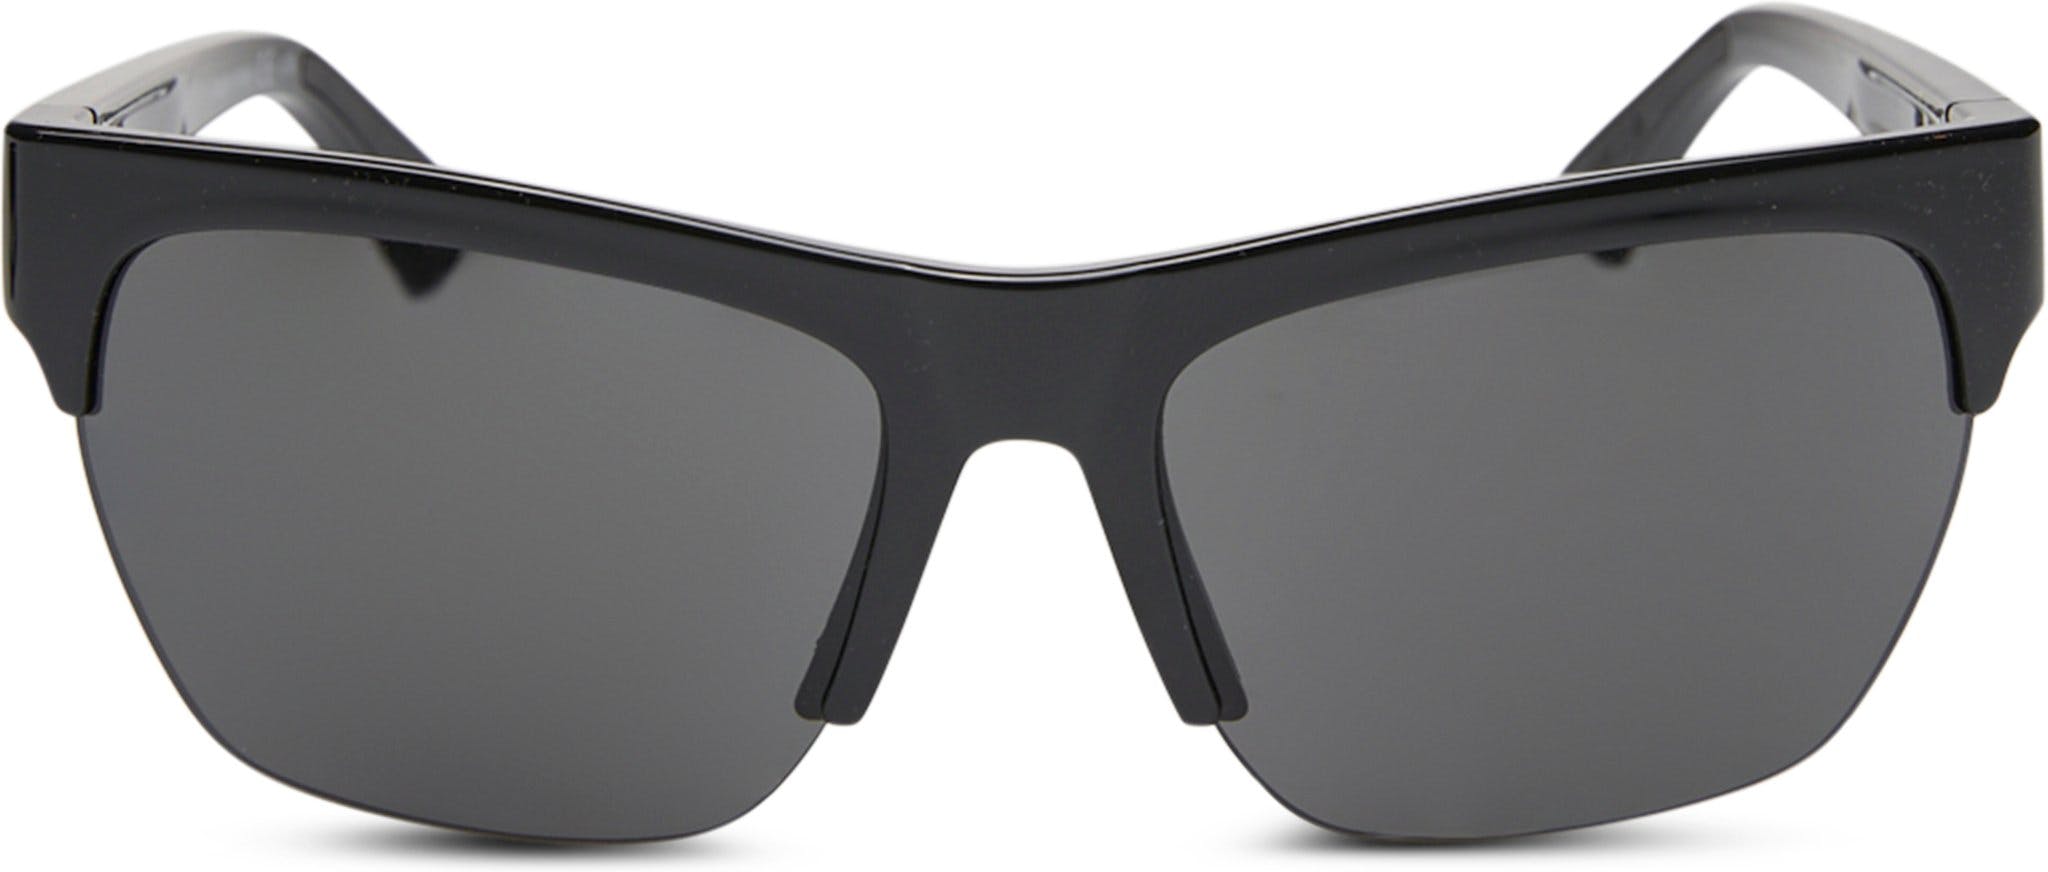 Product image for Formula Sunglasses - Unisex